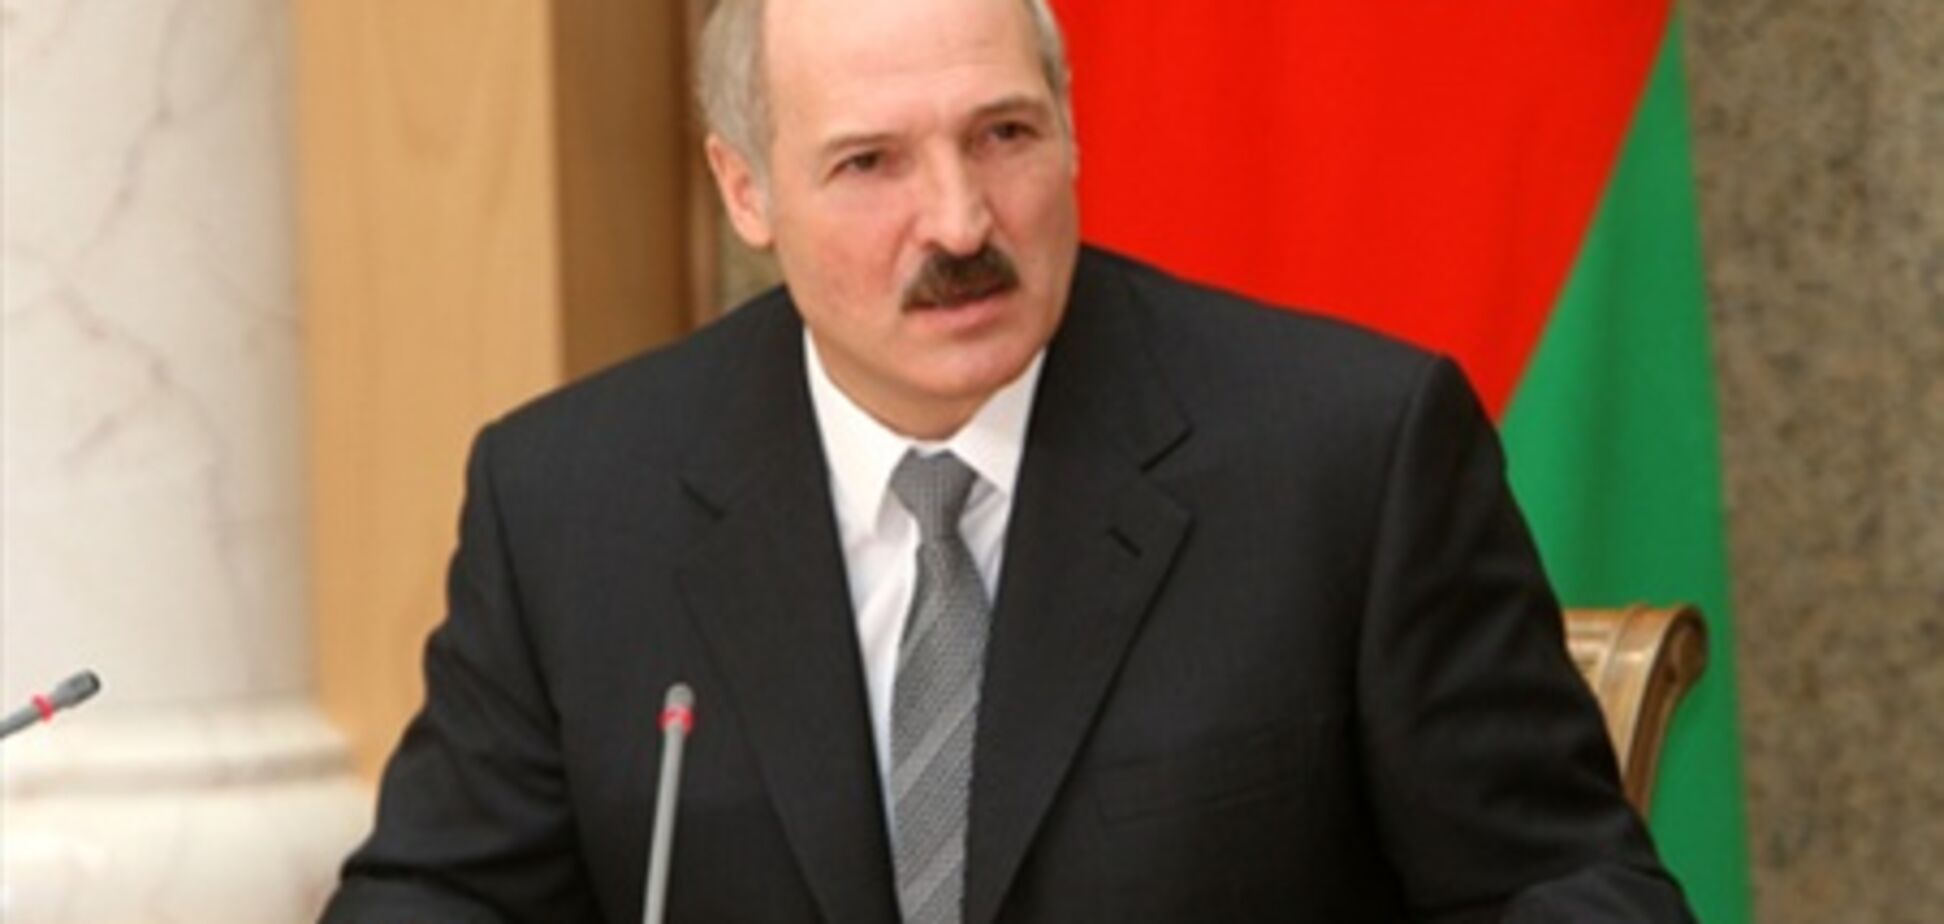 Беларусь готова устроить распродажу своих госпредприятий